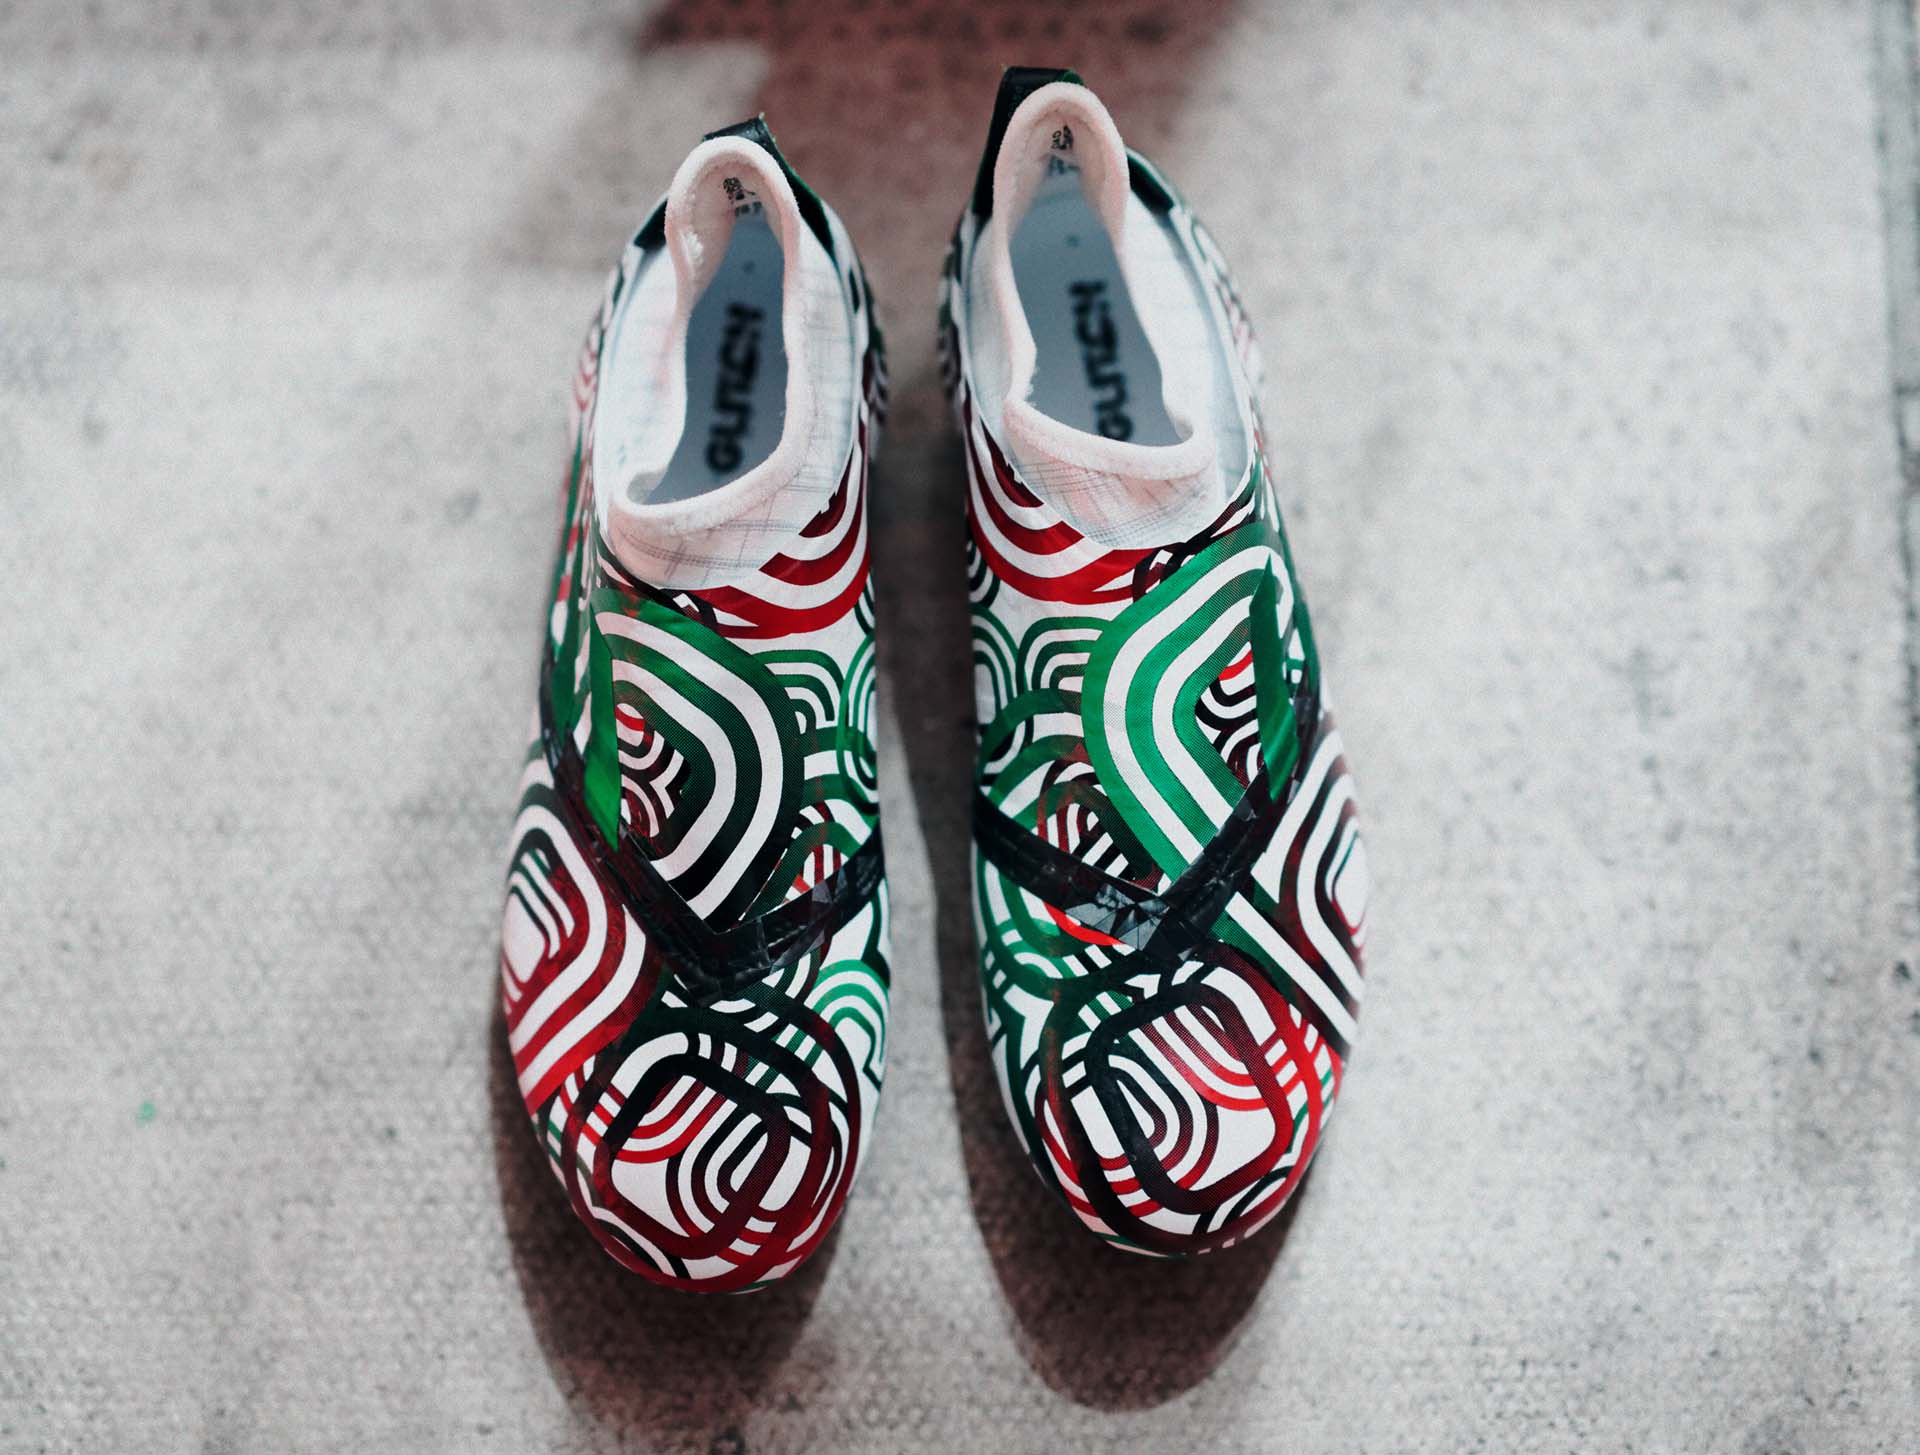 Adidas tung ra phiên bản giày lấy cảm hứng từ World Cup 1986